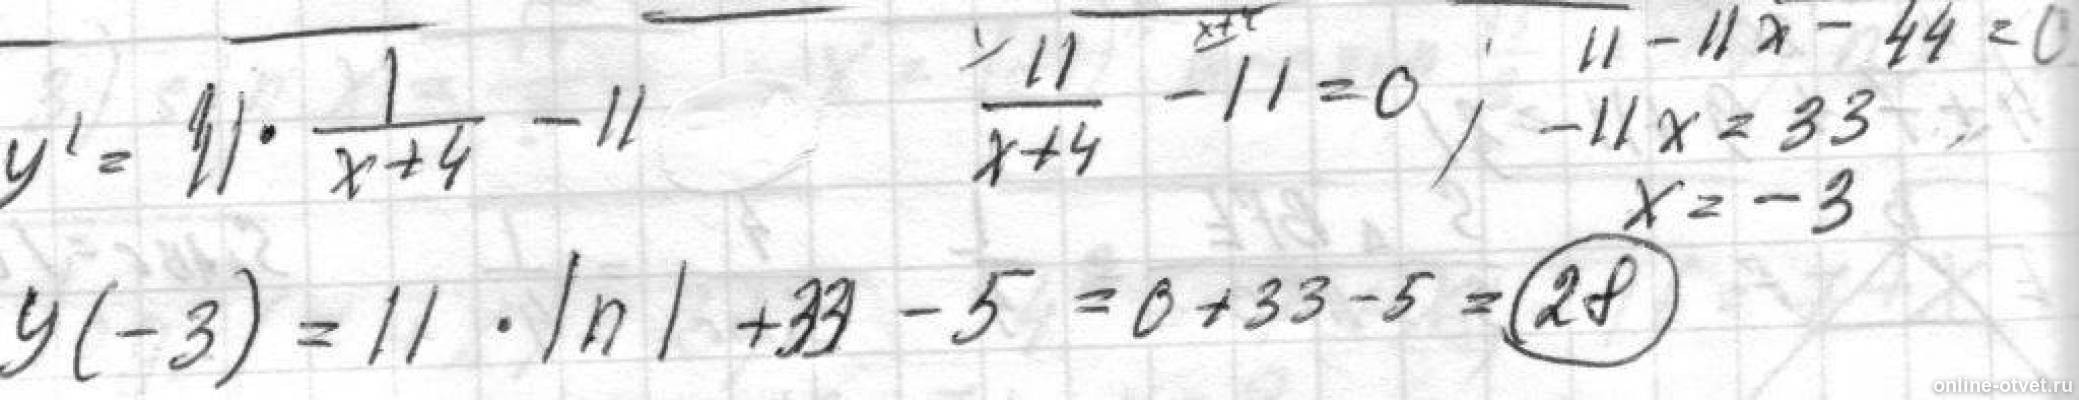 4x y 11 0. Y=11⋅Ln(x+4)−11x−5 на отрезке [− 3,5 ; 0].. У = Ln(x +11) 4x +5. Производная Ln(x+4)^11. Найти наибольшее значение функции y=Ln(x+2).